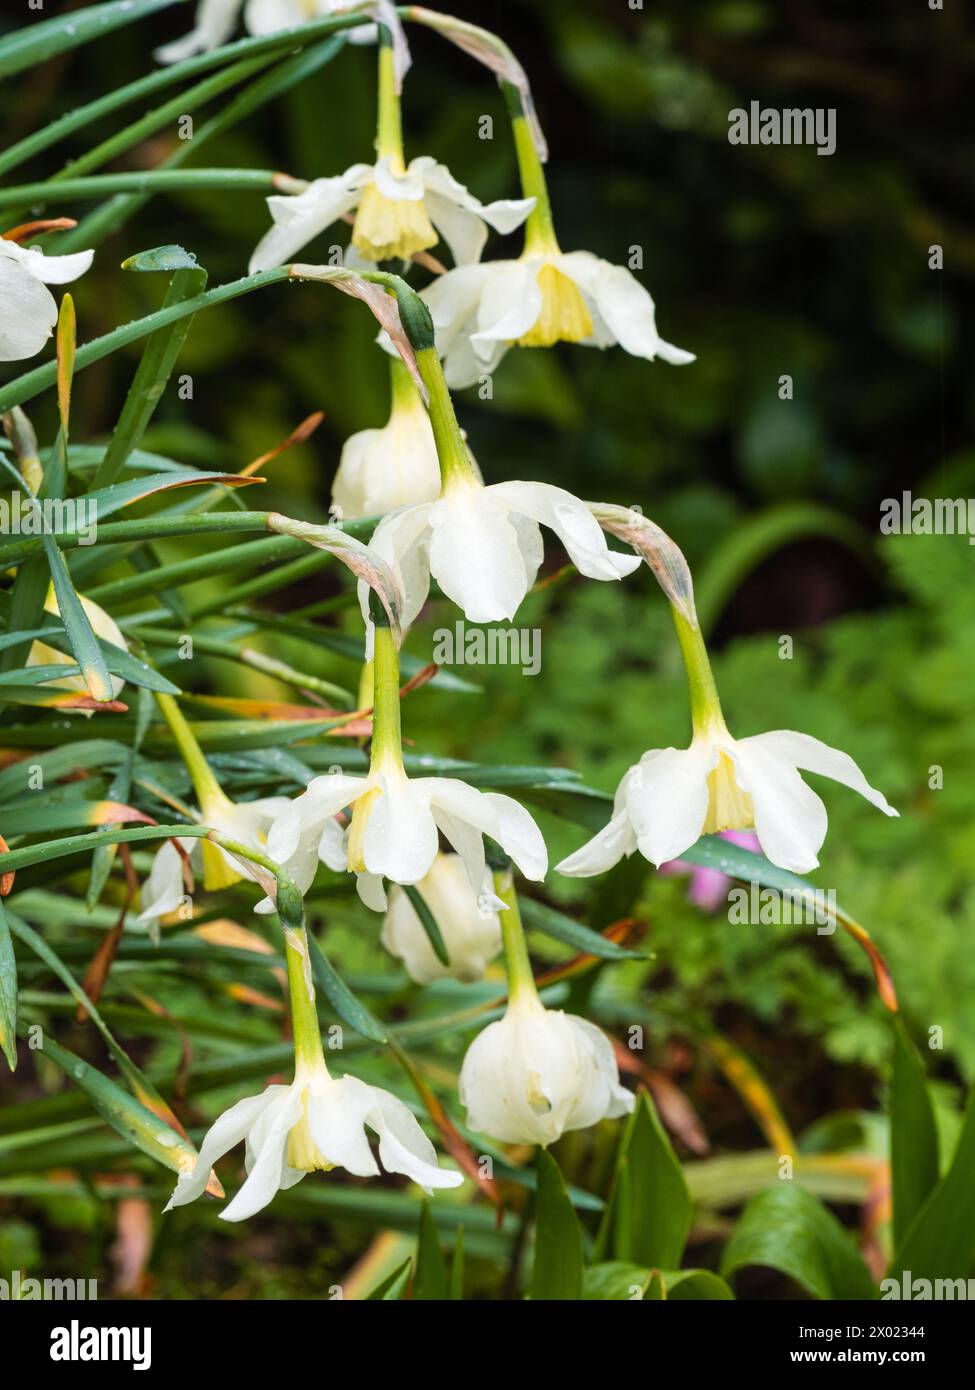 Weiße Blütenblätter und blassgelbe Blütenblätter der traditionellen Narzissen-Sorte Narcissus 'Mrs Langtry', die im Frühjahr blüht Stockfoto